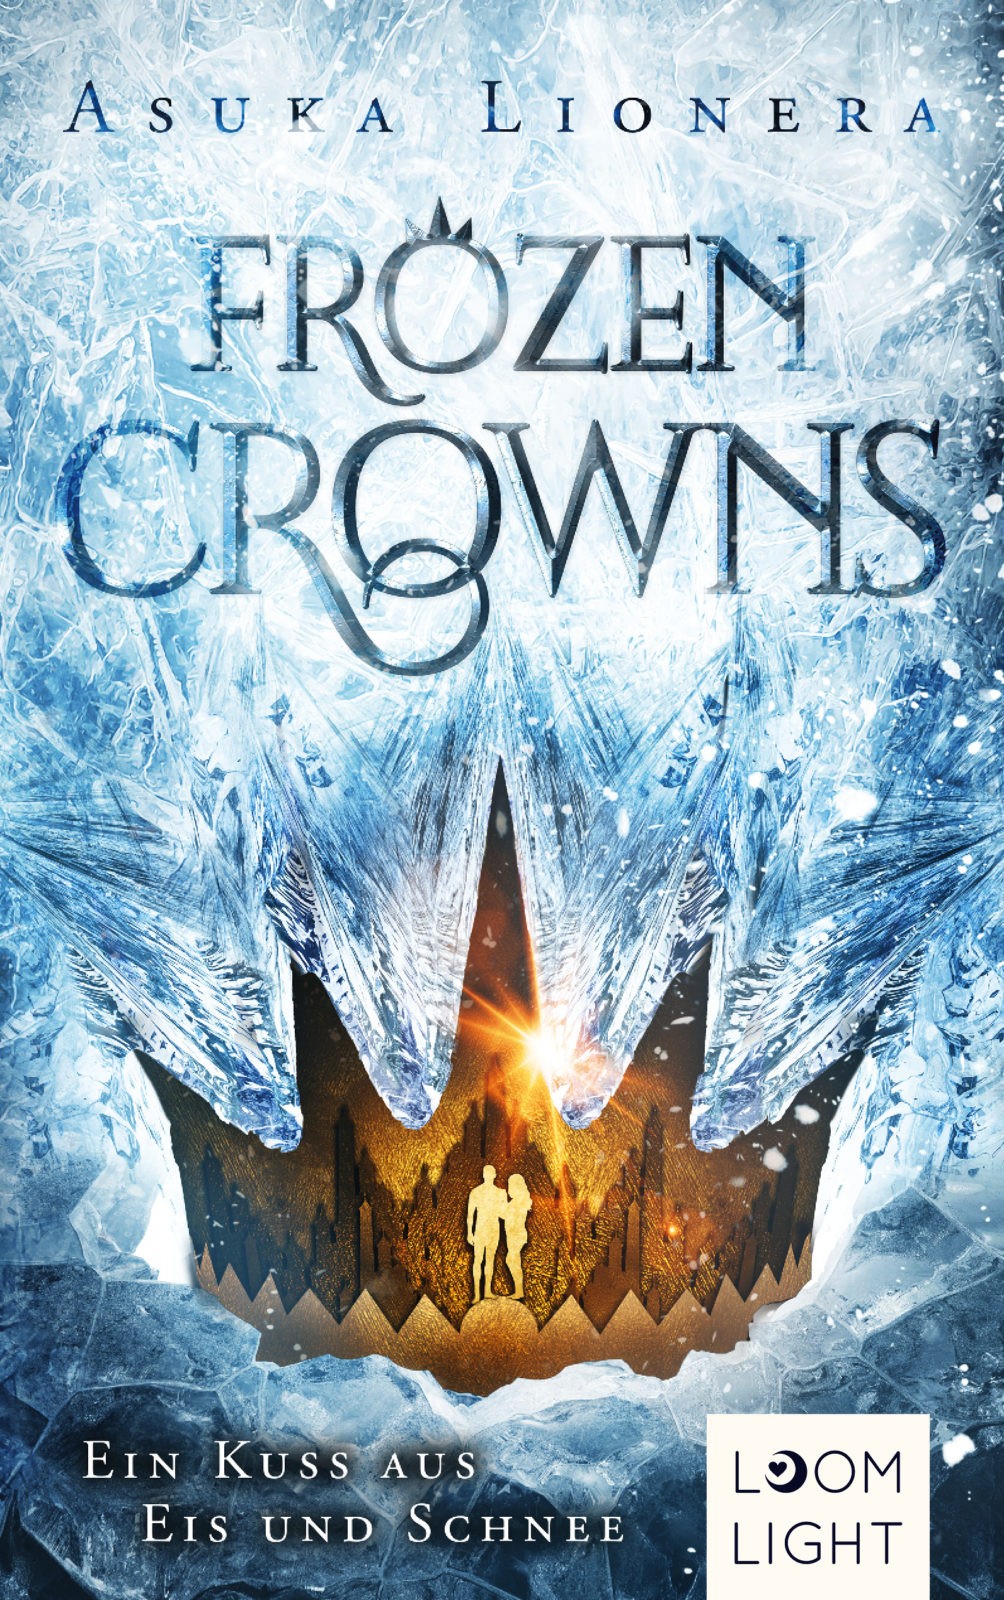 Frozen Crowns (1): Ein Kuss aus Eis und Schnee